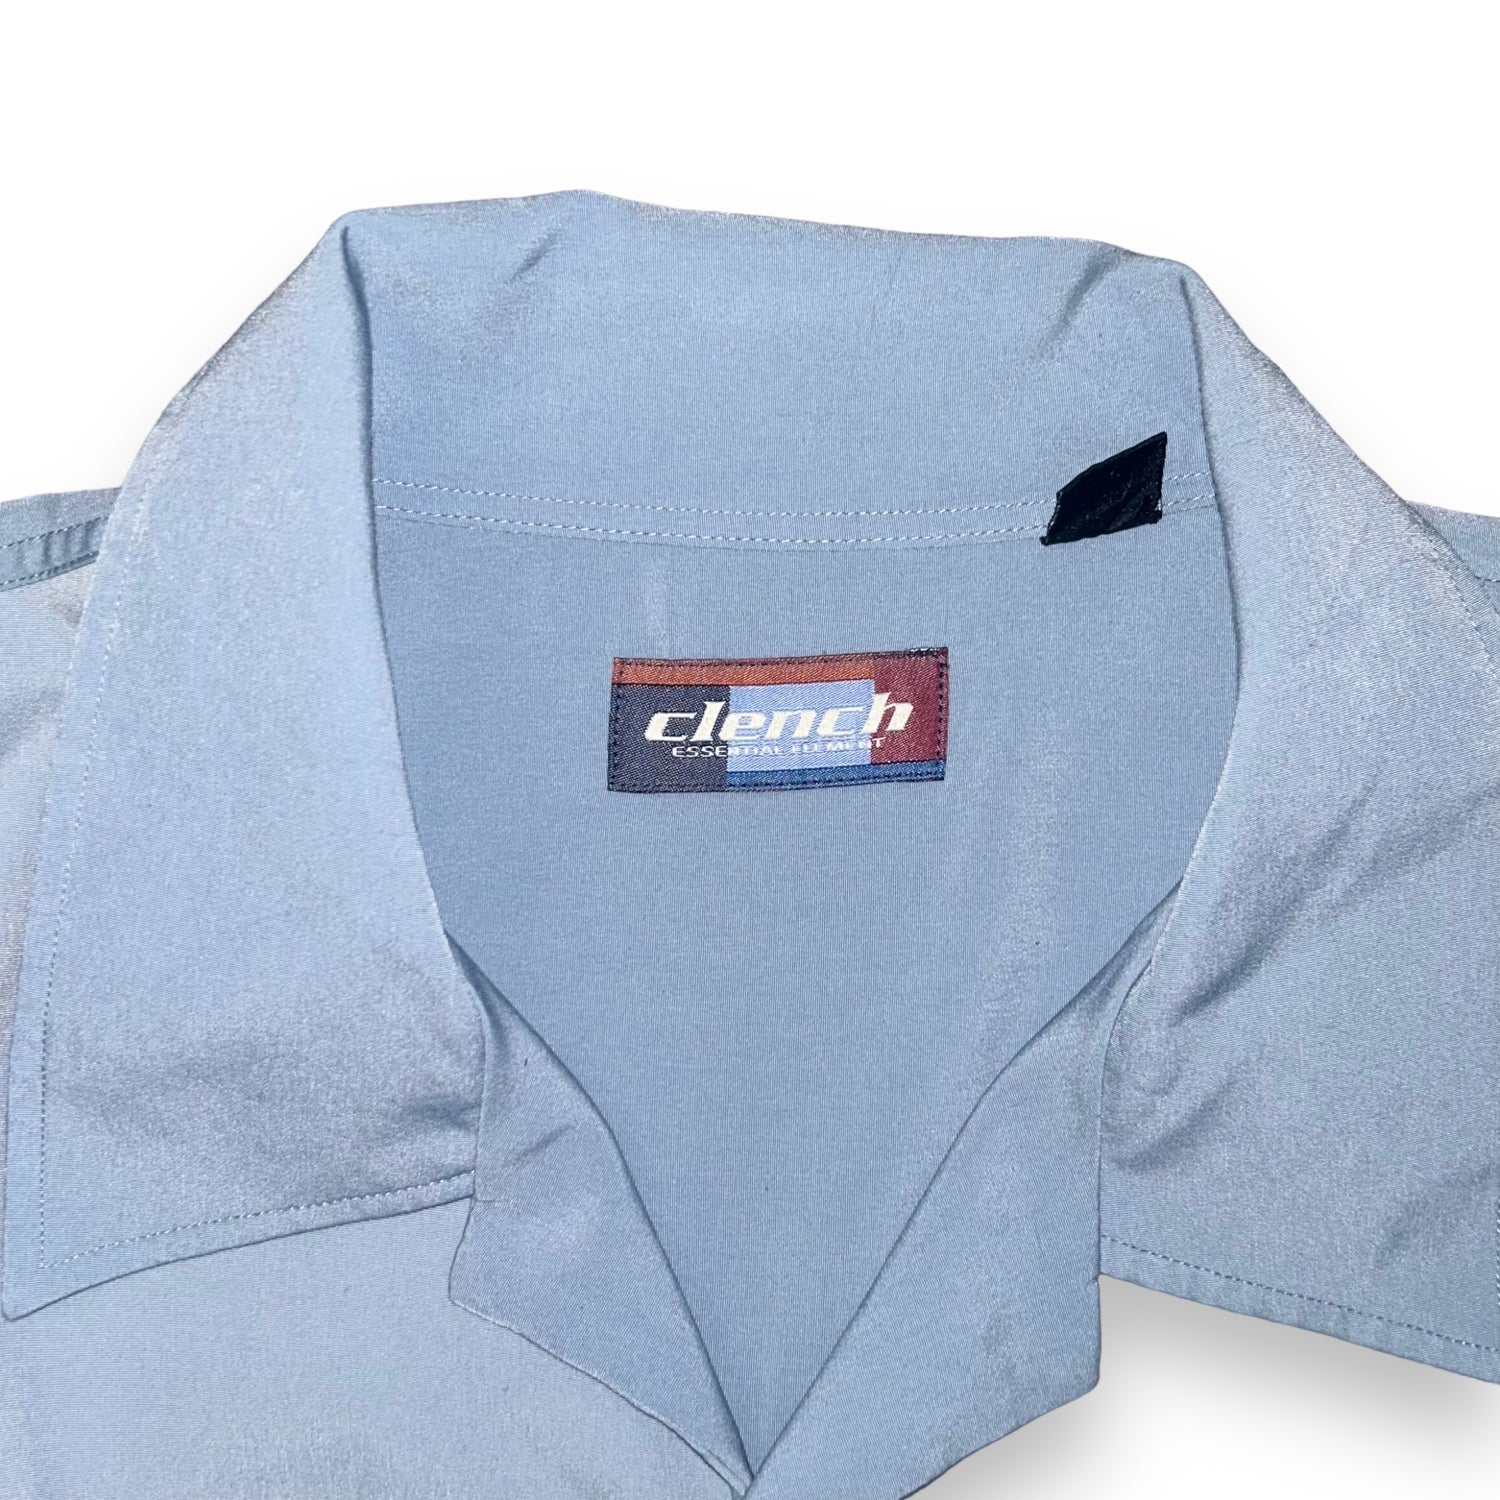 Camicia Clench (XL)